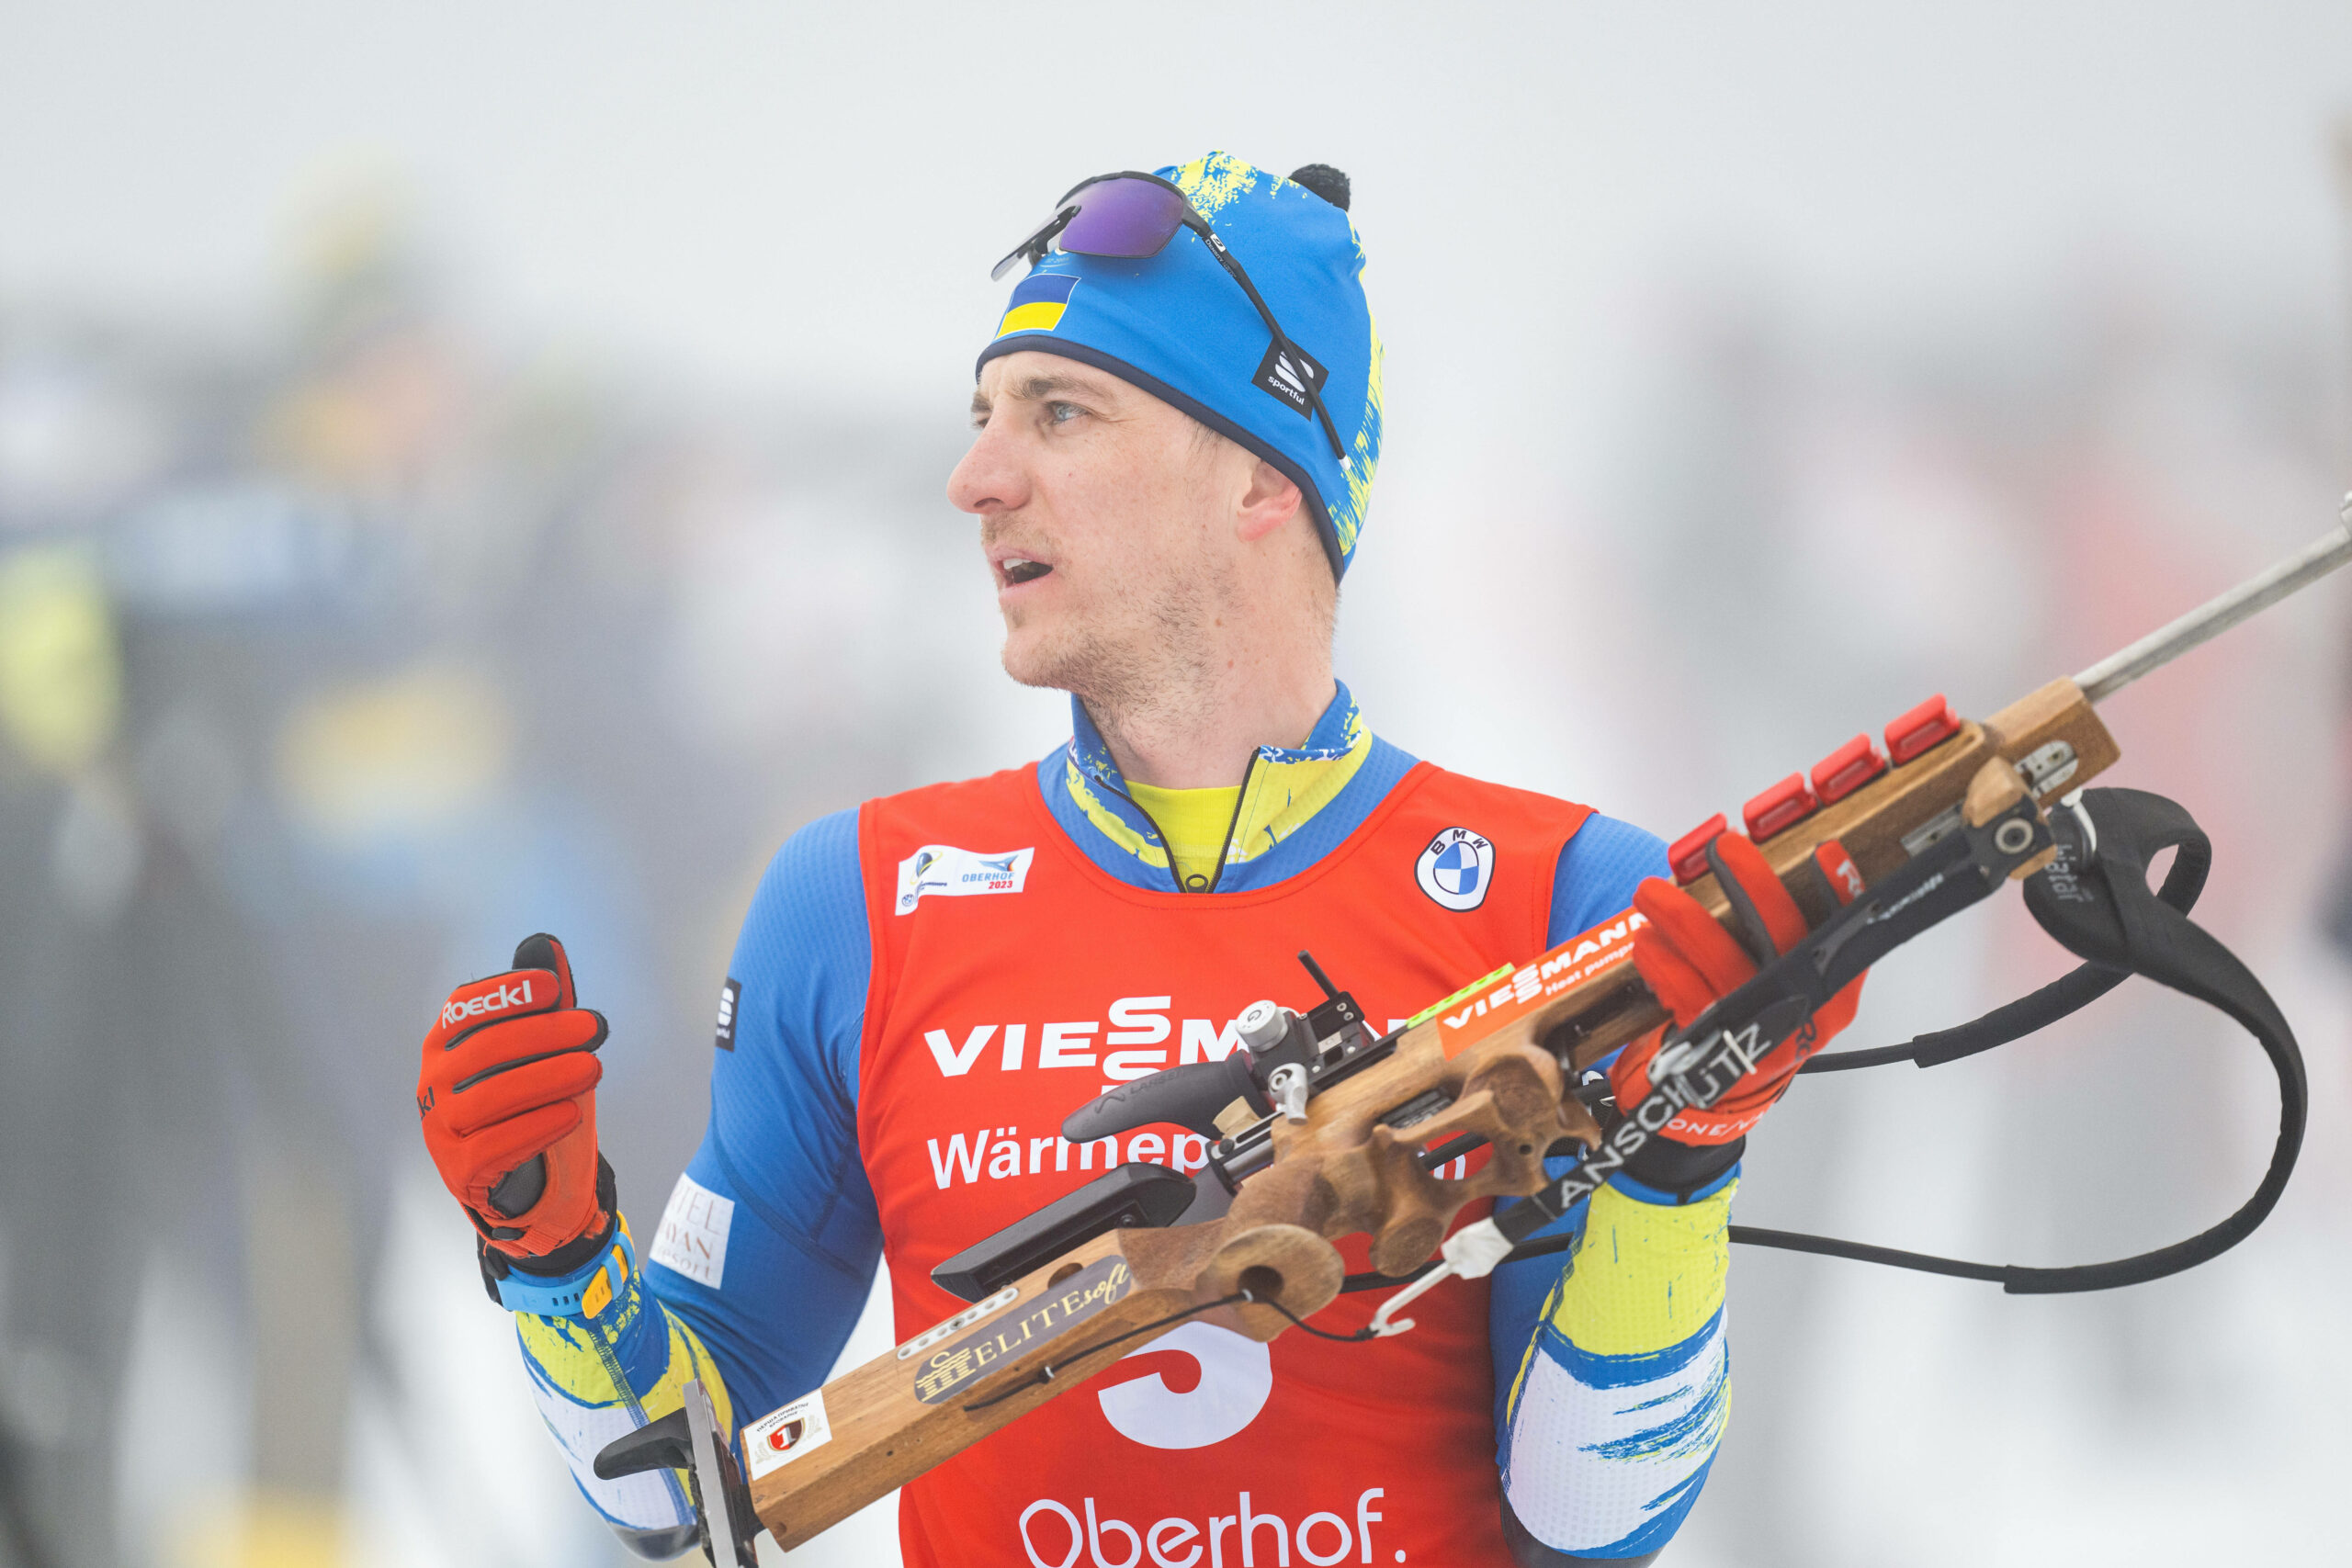 Ukrainischer Biathlon-Star Dmytro Pidruchnyi beim Schießen